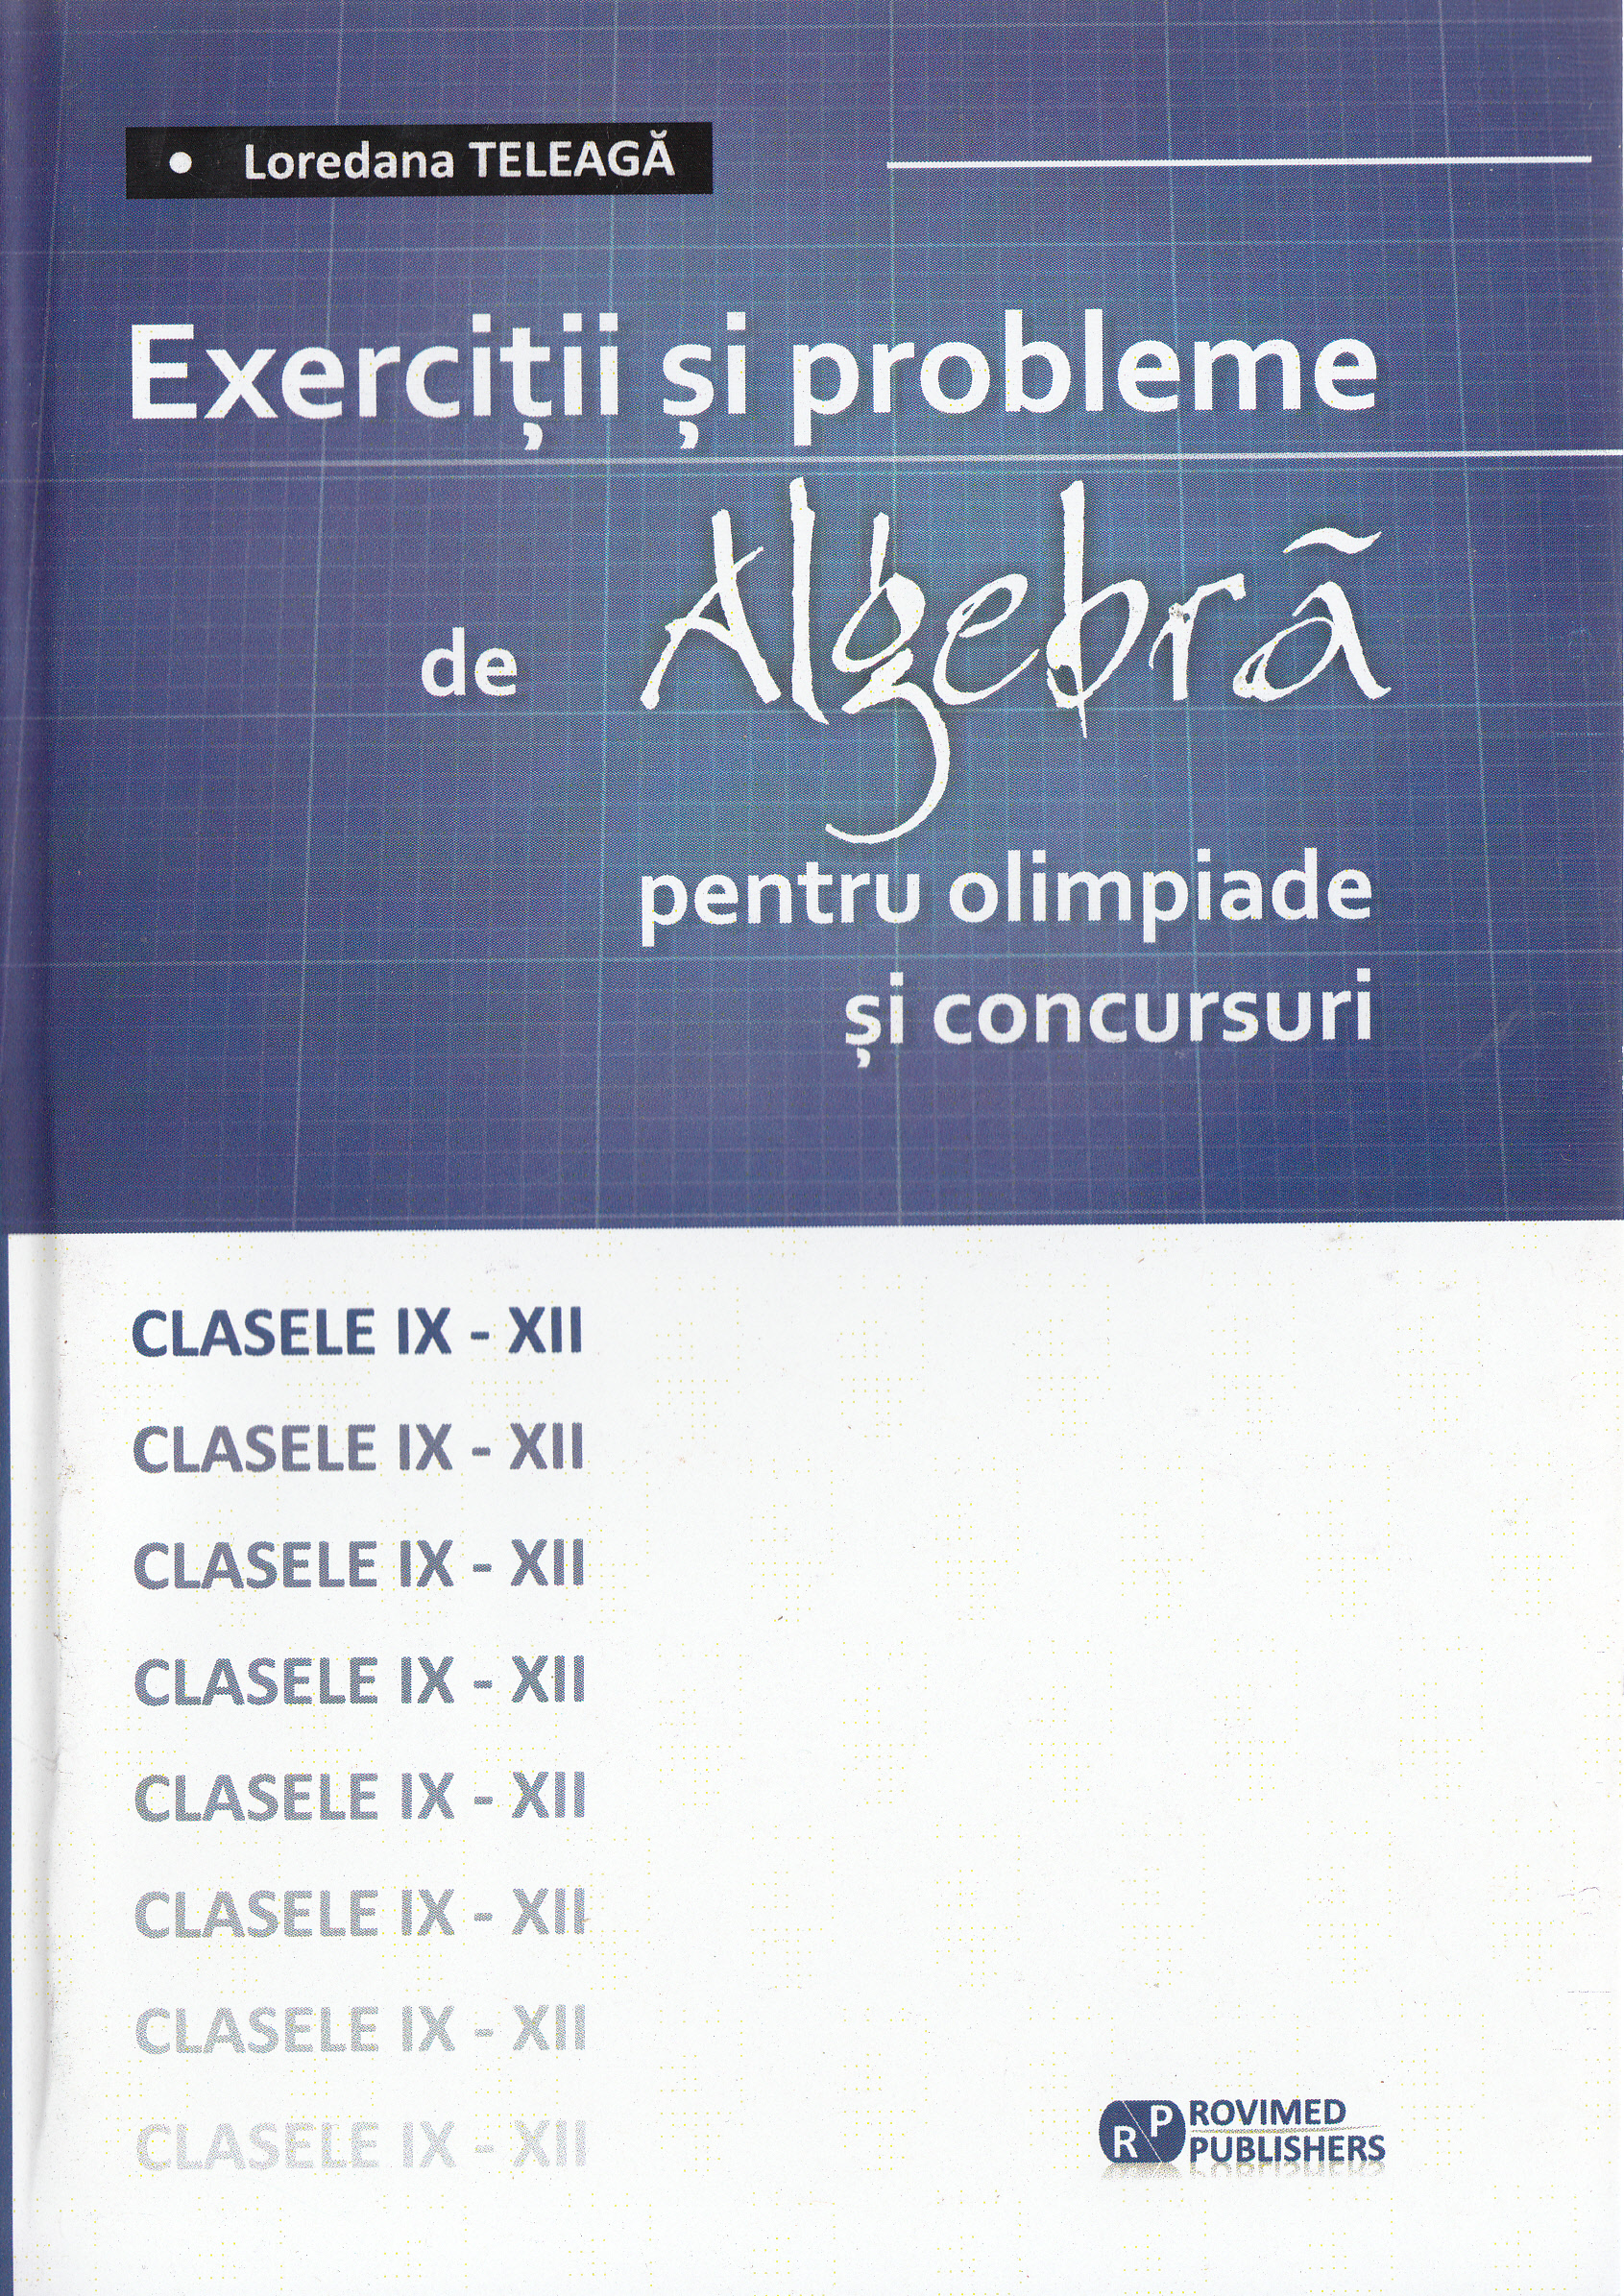 Exercitii si probleme de algebra pentru olimpiade si concursuri - Cls 9-12 - Loredana Teleaga